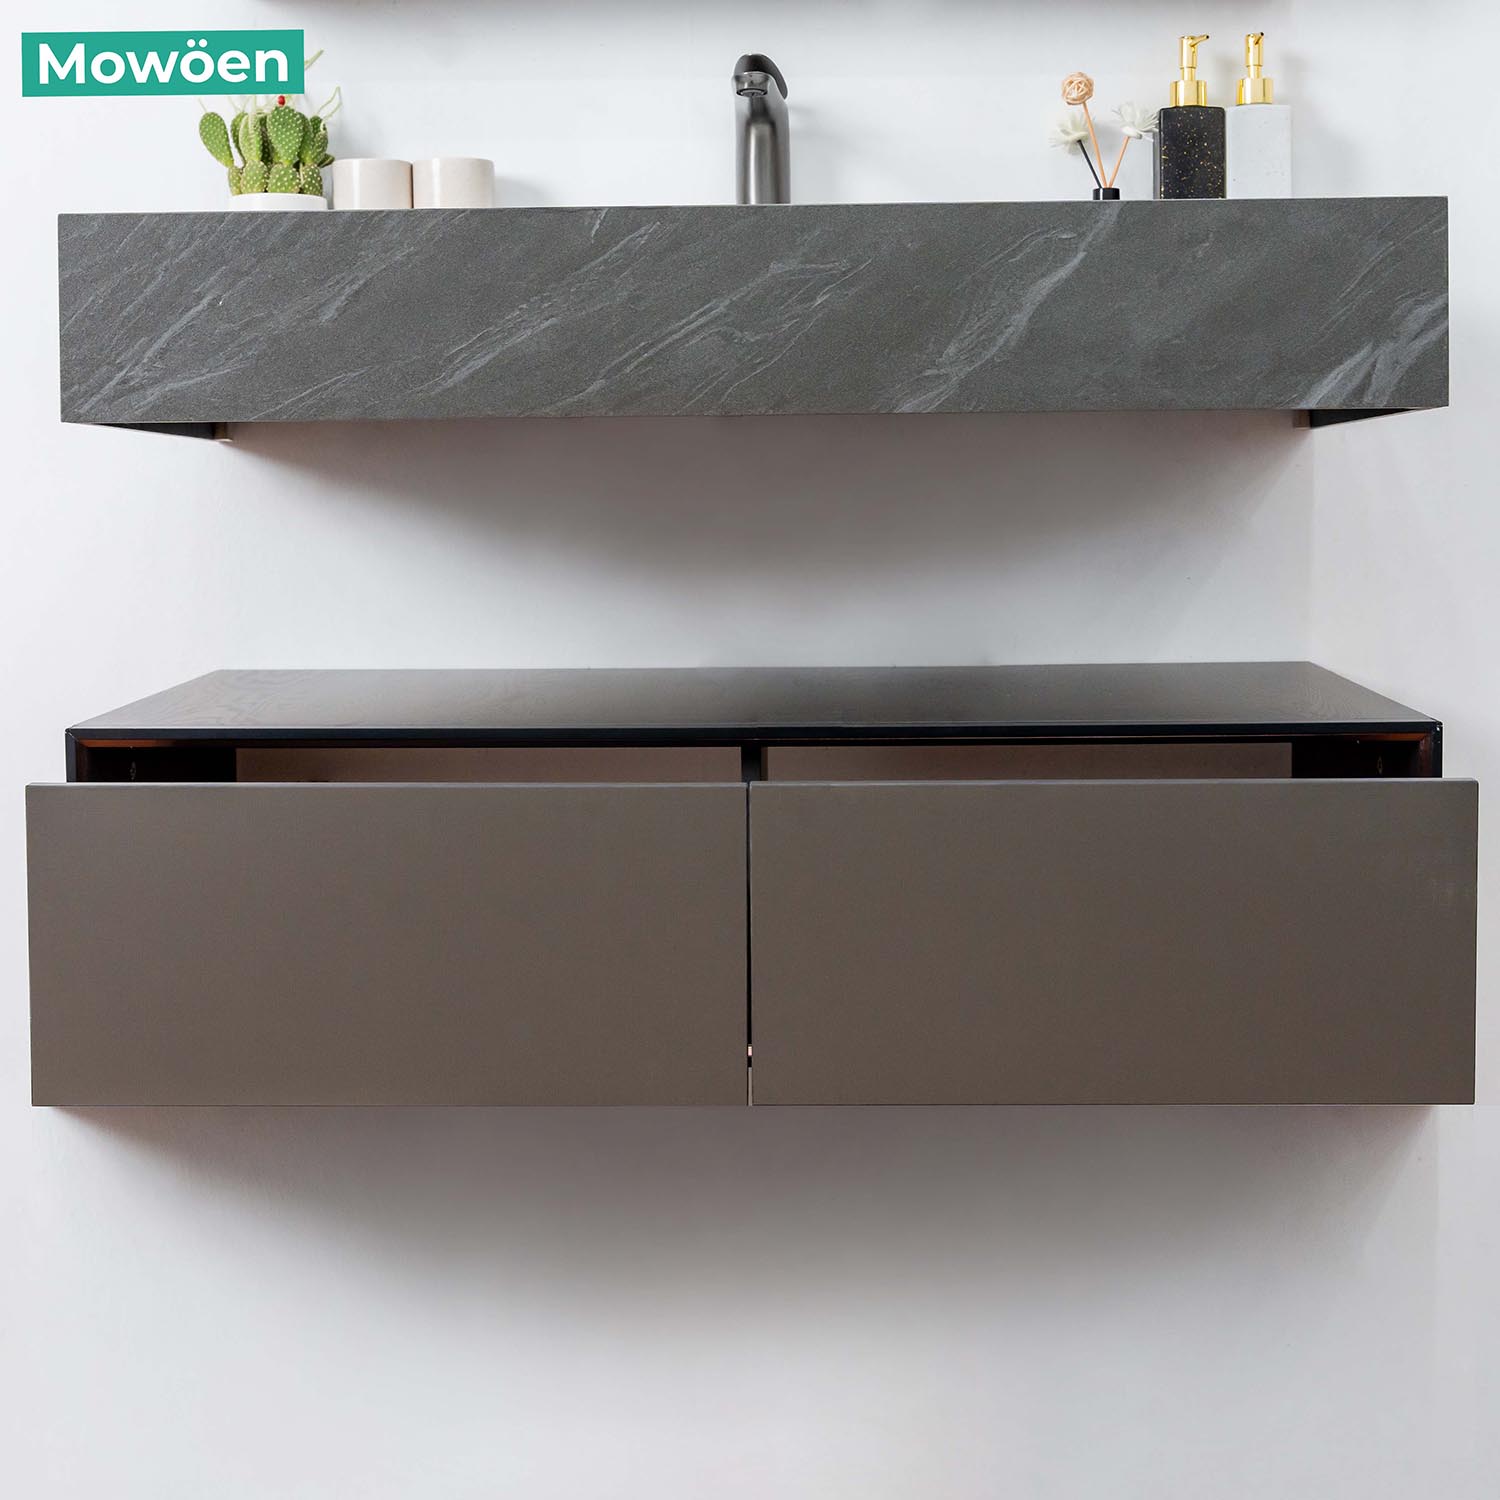 Tủ Lavabo Mowoen MW6630 – 100SB chất liệu Plywood nhập khẩu